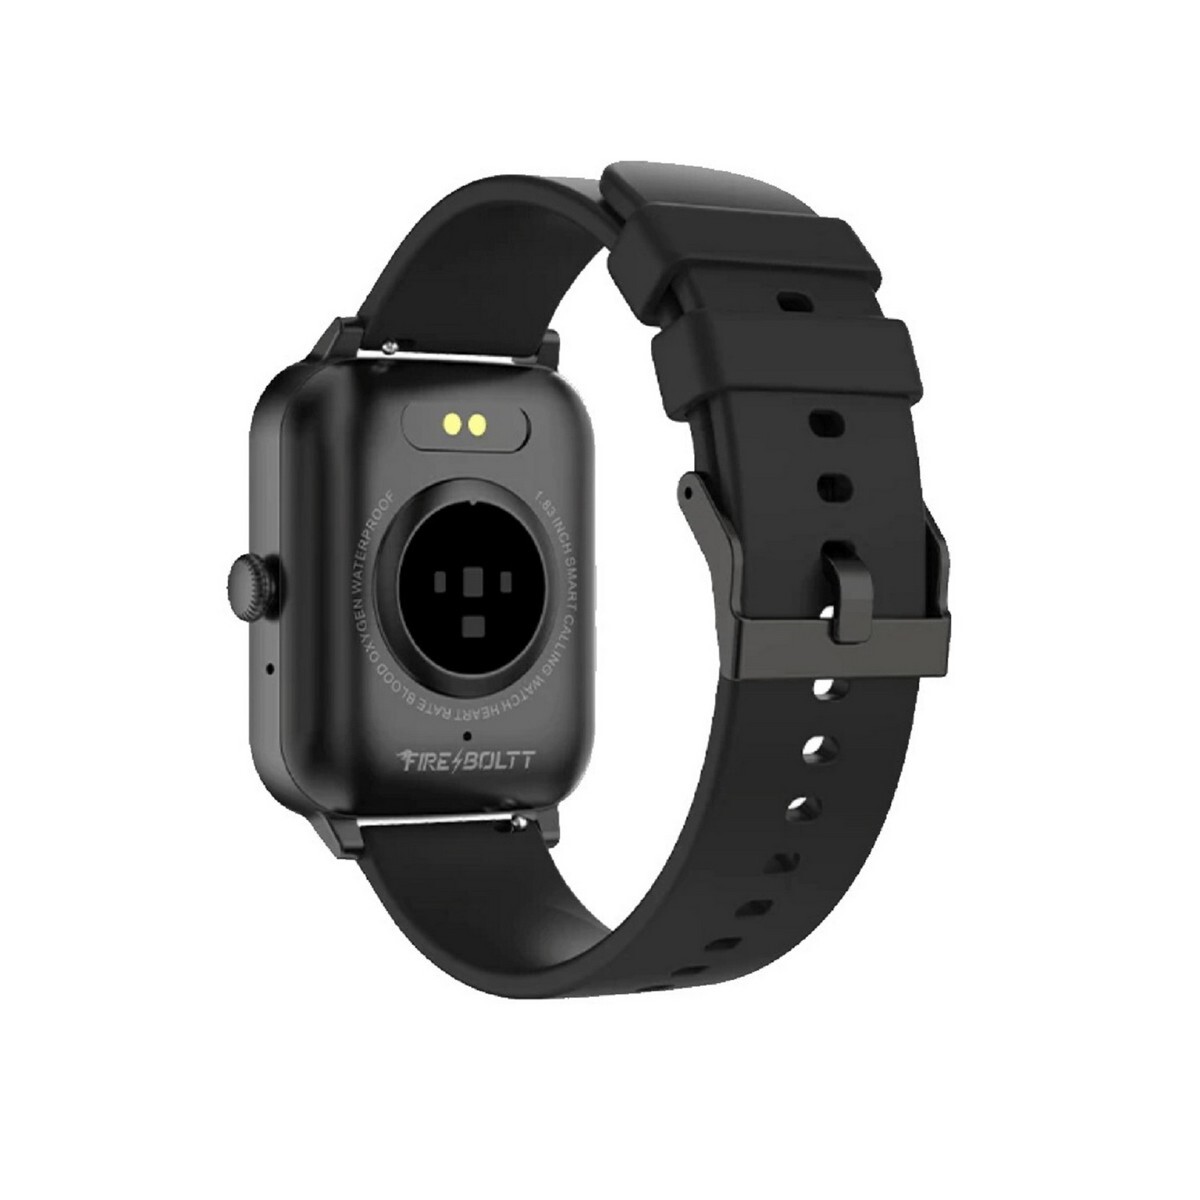 FireBoltt Smart Watch Falcon BSW098 Black